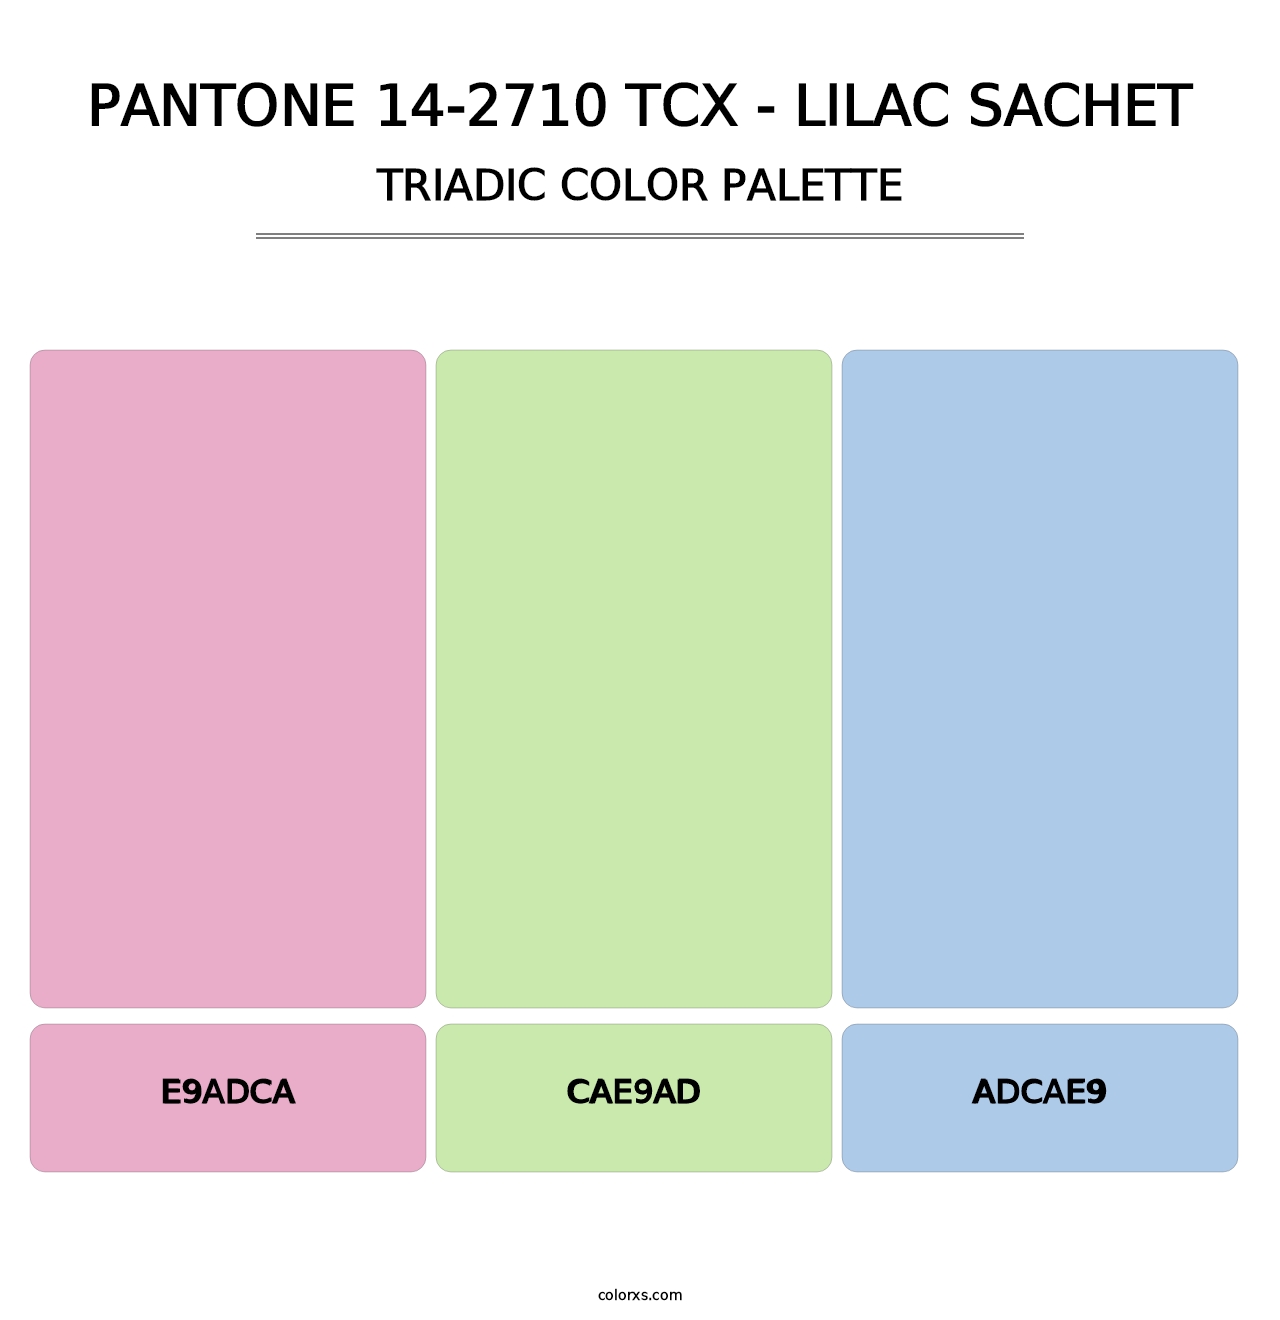 PANTONE 14-2710 TCX - Lilac Sachet - Triadic Color Palette